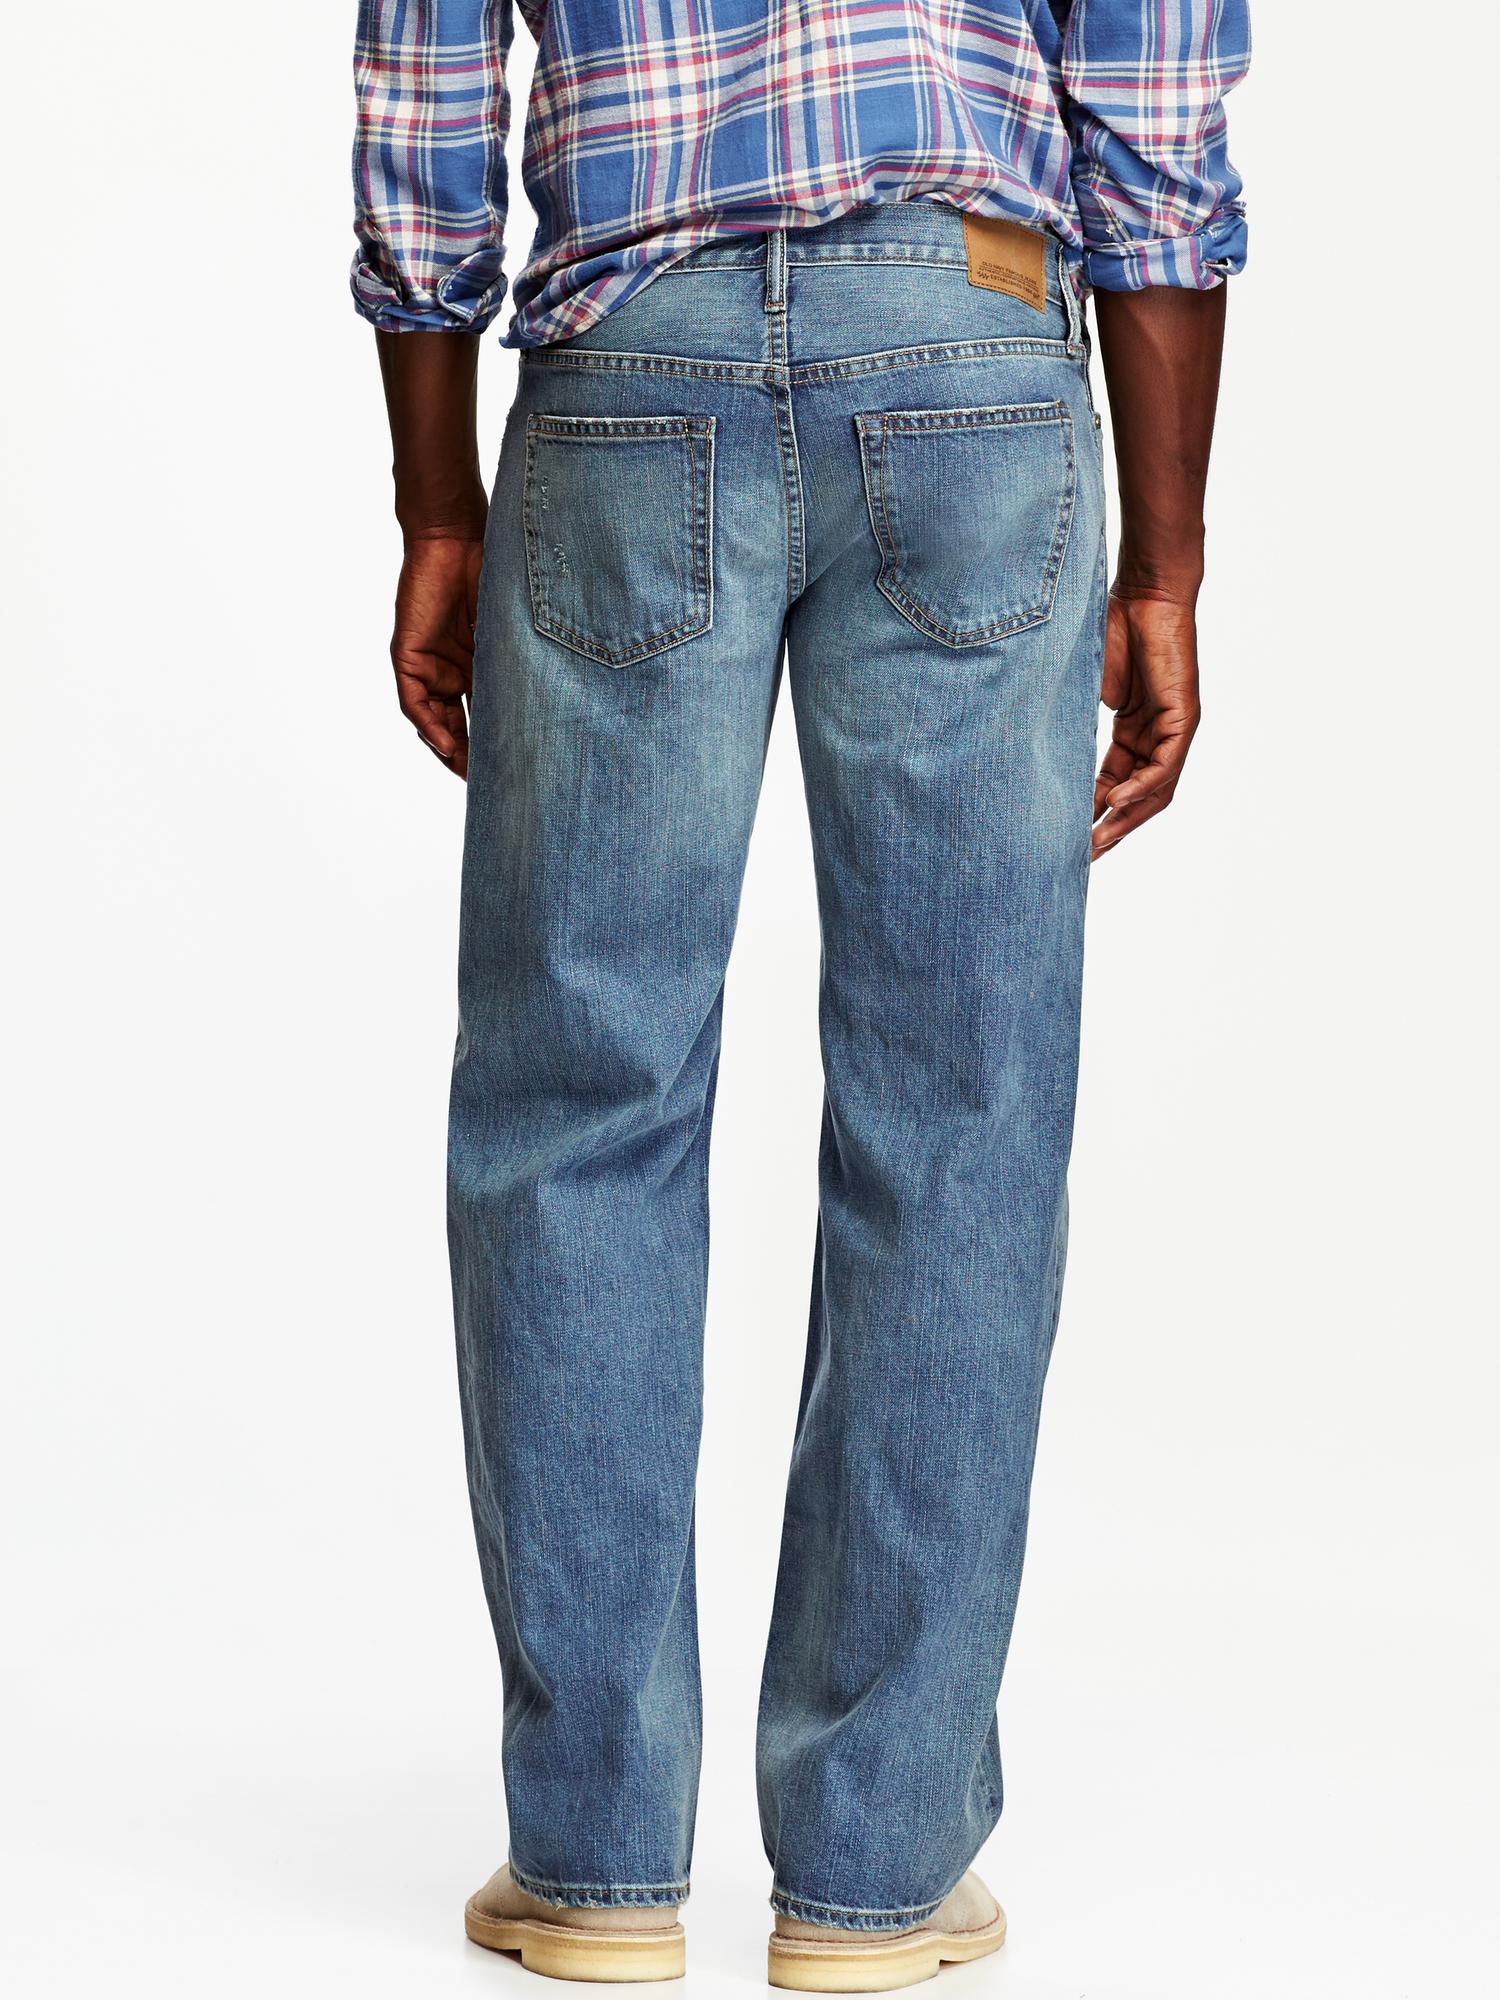 Old Navy Mens Blue Loose Fit Denim Jeans Size 44/32 - beyond exchange